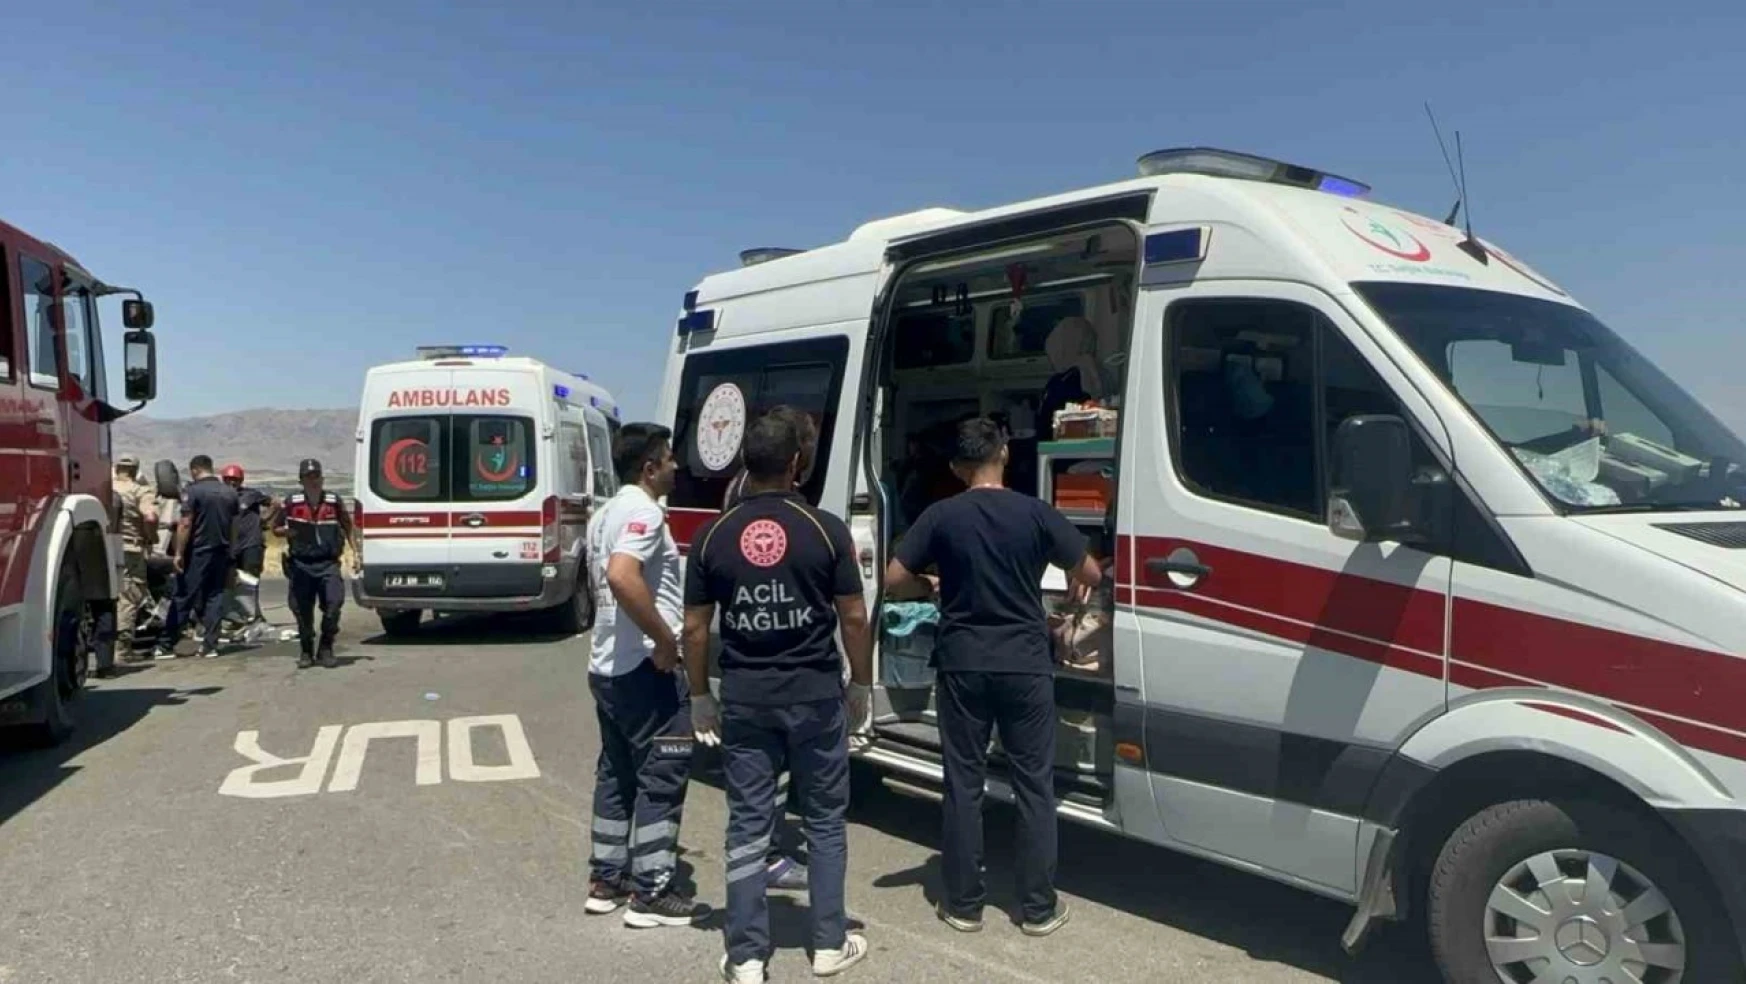 Elazığ'daki kazada yaralılara ilk müdahaleyi yapan vatandaş konuştu: 'Önce refüje sonra kavşağa vurup takla atmış'